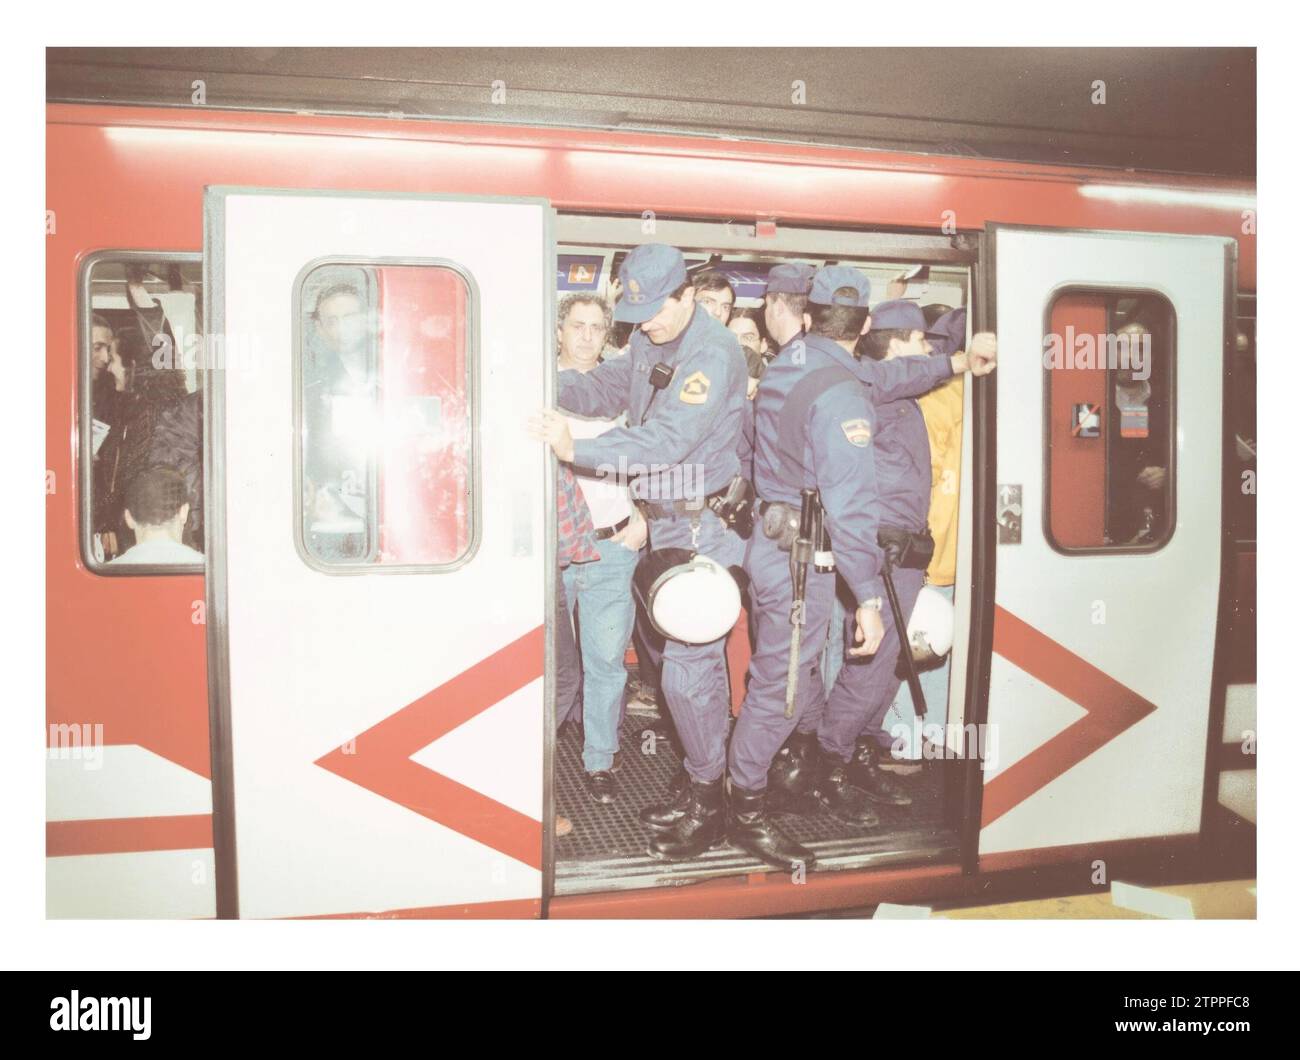 Madrid, 03.07.1998. Ein U-Bahn-Auto, das während des Streiks von der Polizei überwacht wird, aufgrund der zahlreichen gewalttätigen Vorfälle, die während des Streiks stattfinden. Quelle: Album / Archivo ABC / Alejandro Carra Stockfoto